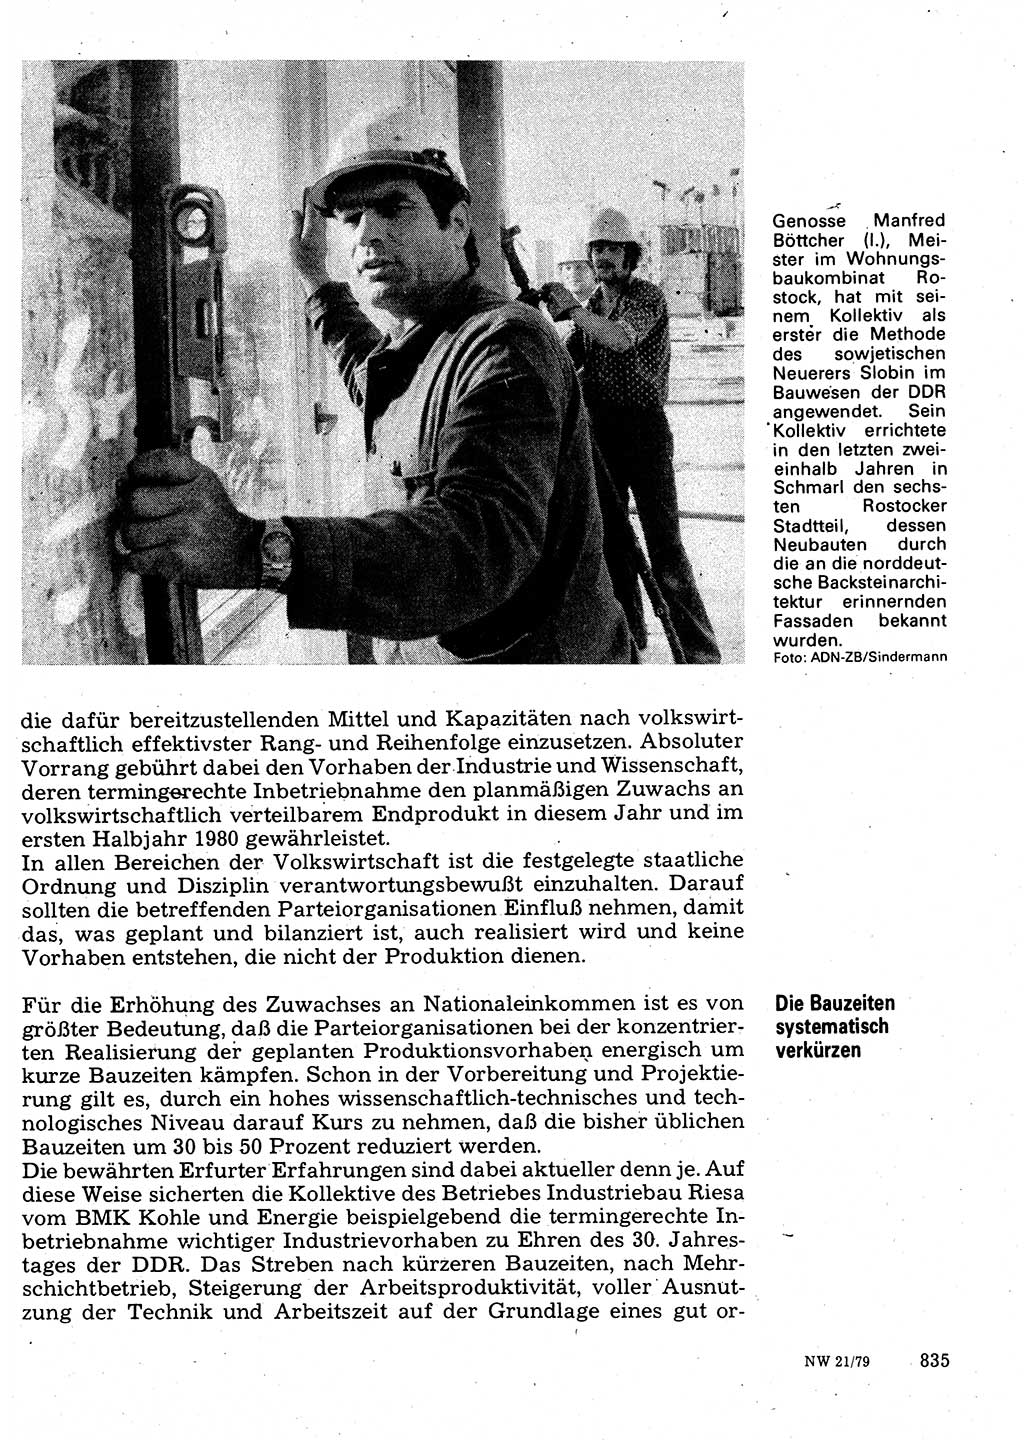 Neuer Weg (NW), Organ des Zentralkomitees (ZK) der SED (Sozialistische Einheitspartei Deutschlands) für Fragen des Parteilebens, 34. Jahrgang [Deutsche Demokratische Republik (DDR)] 1979, Seite 835 (NW ZK SED DDR 1979, S. 835)